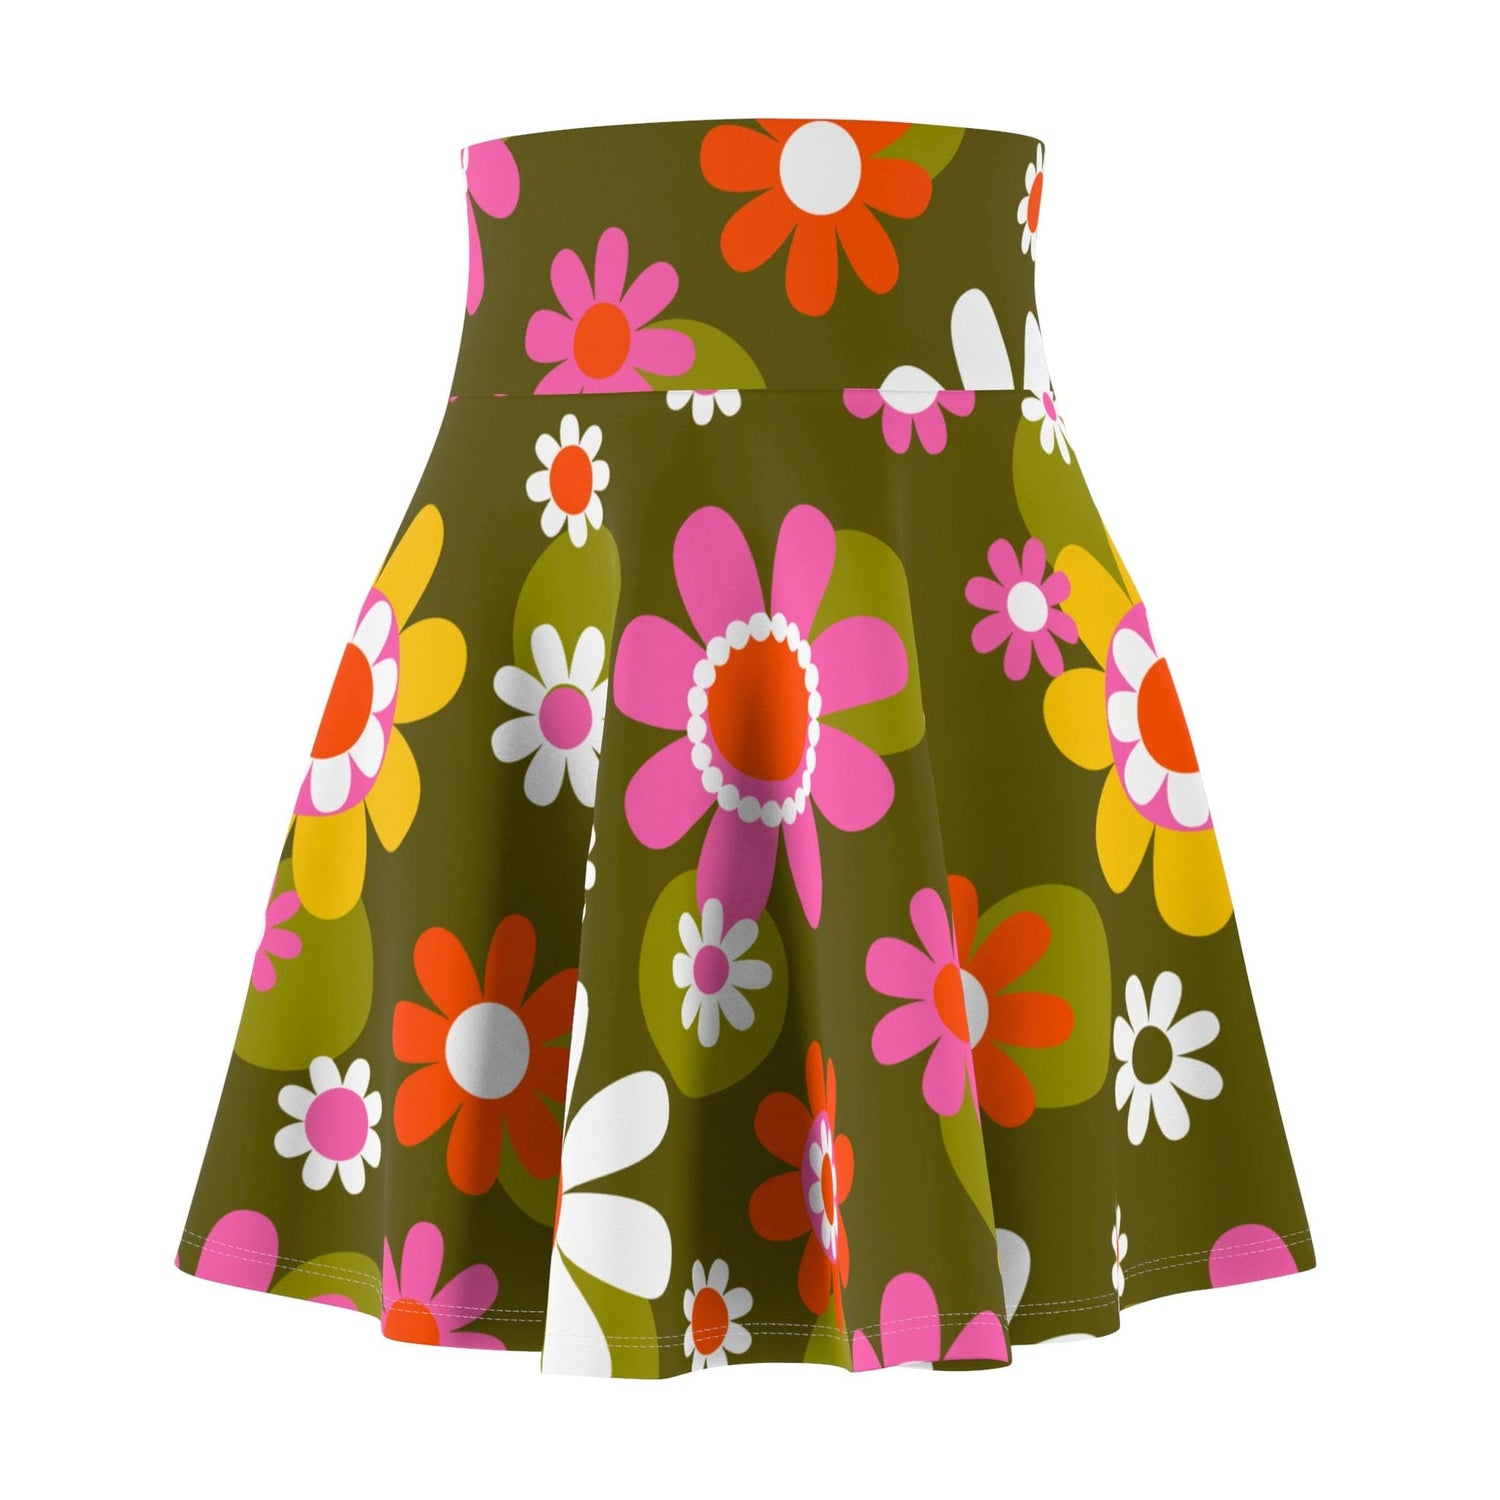 Kate McEnroe New York Groovy Flower Power Hippie Daisies 70s Disco Party Skirt, Retro Pink, Green Mid Century Modern Skater Skirt - 129882223 Skirts